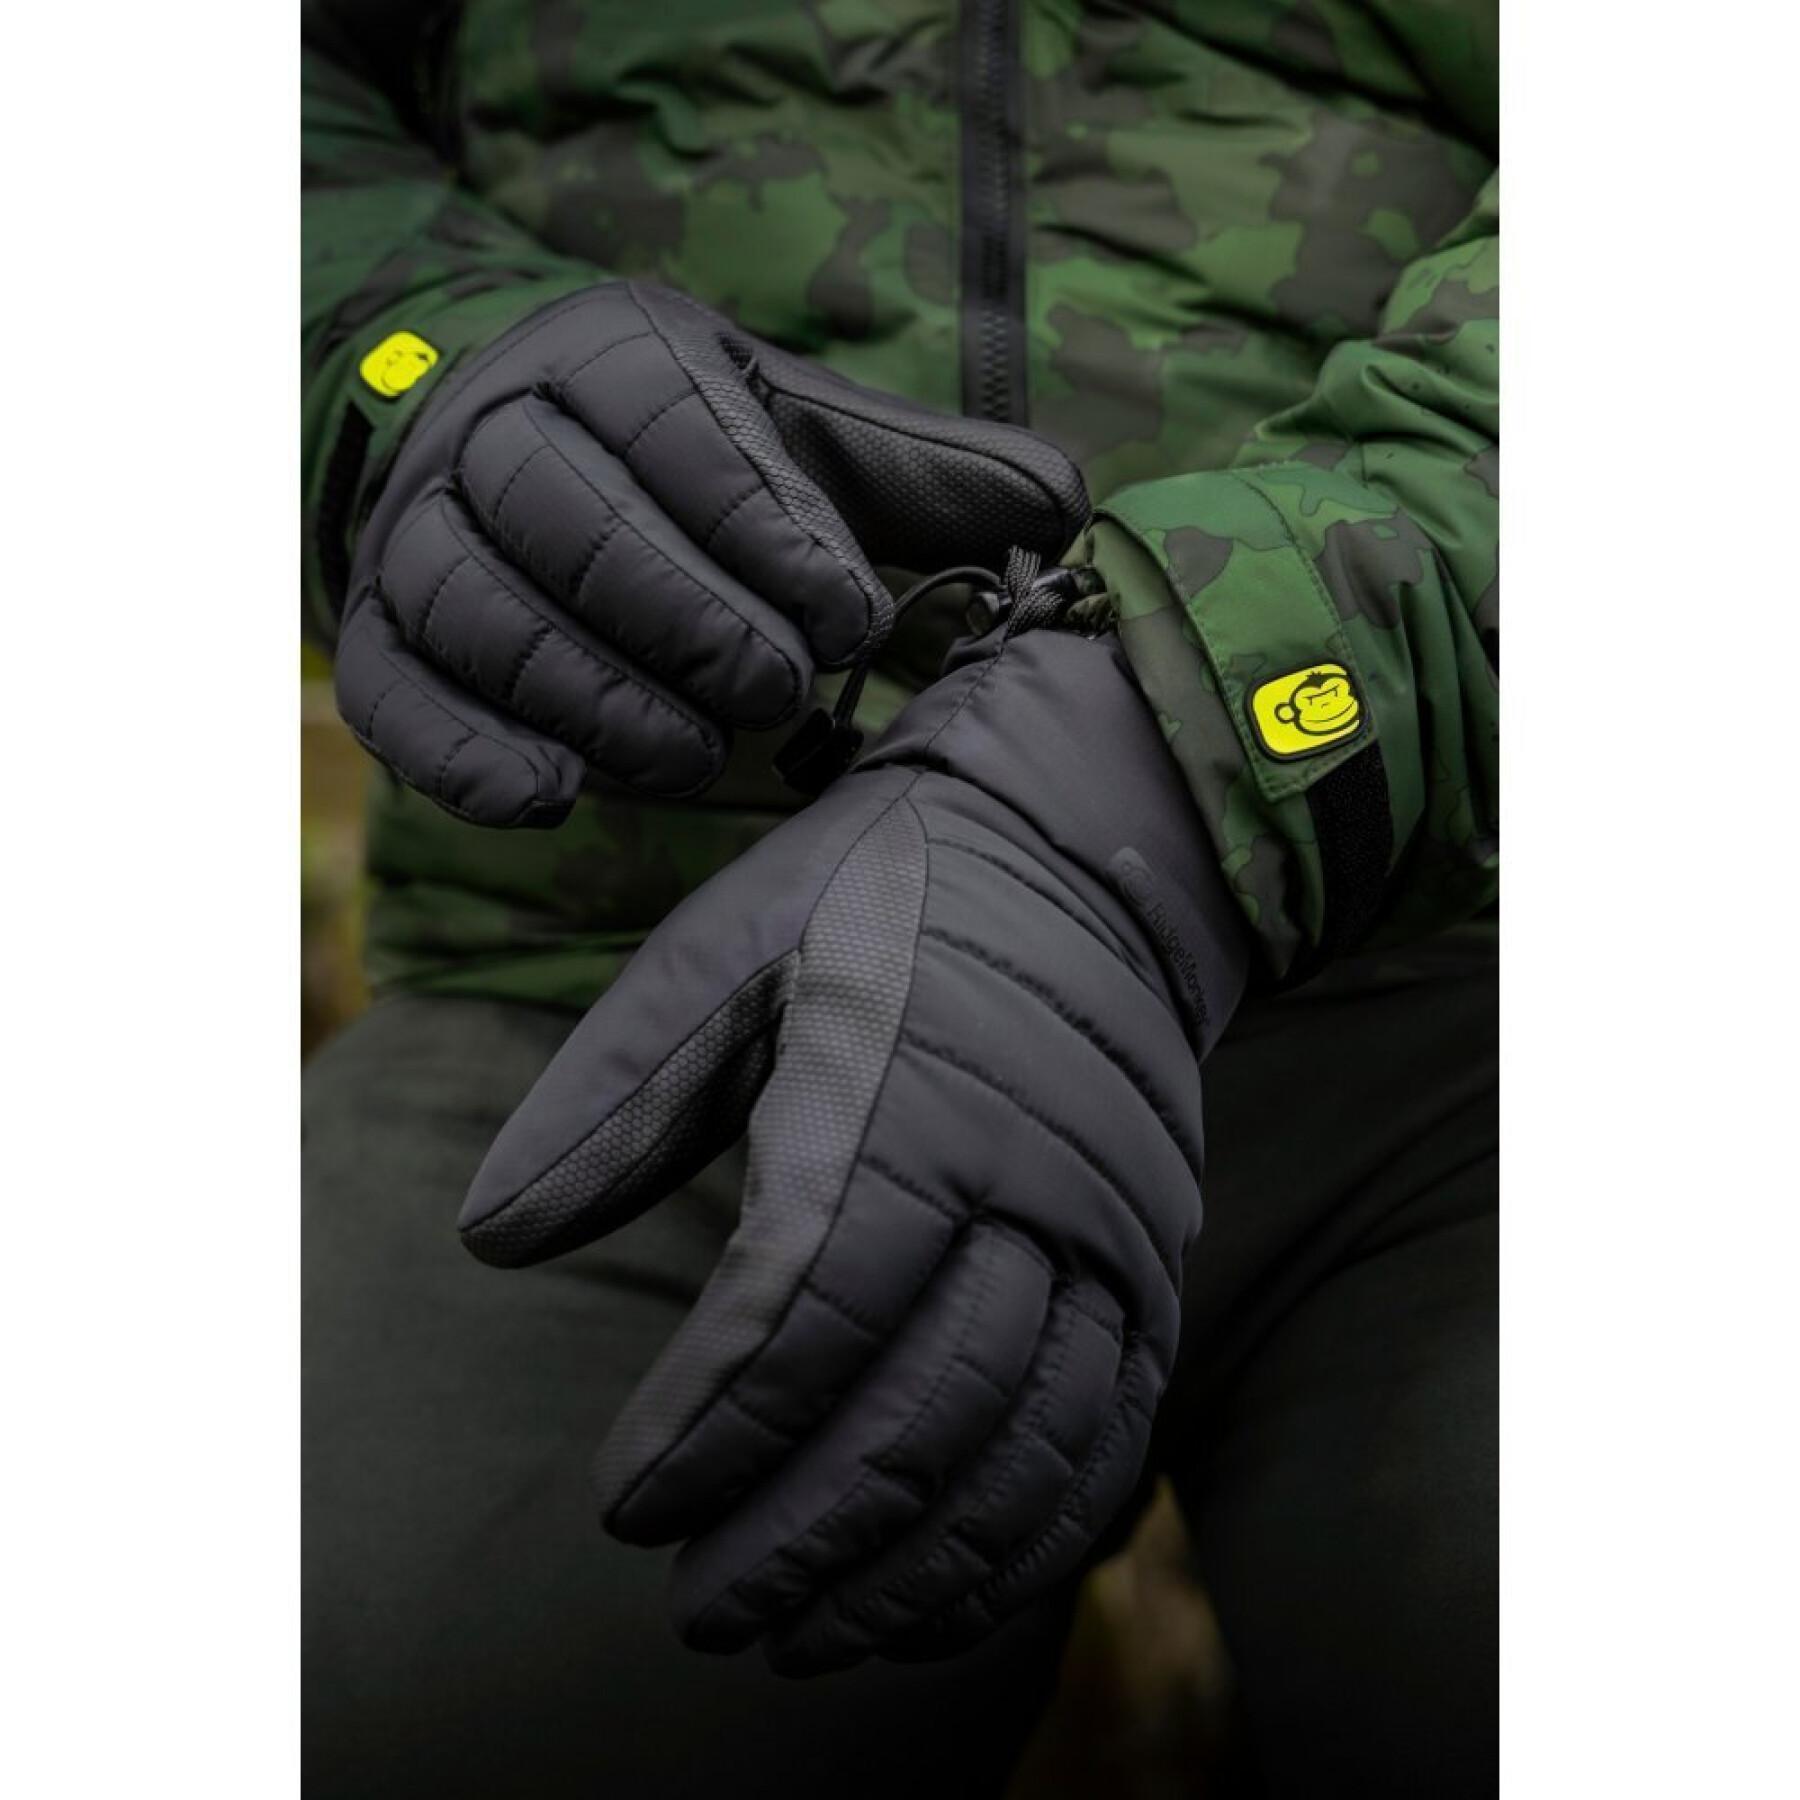 Waterproof gloves RidgeMonkey APEarel K2XP